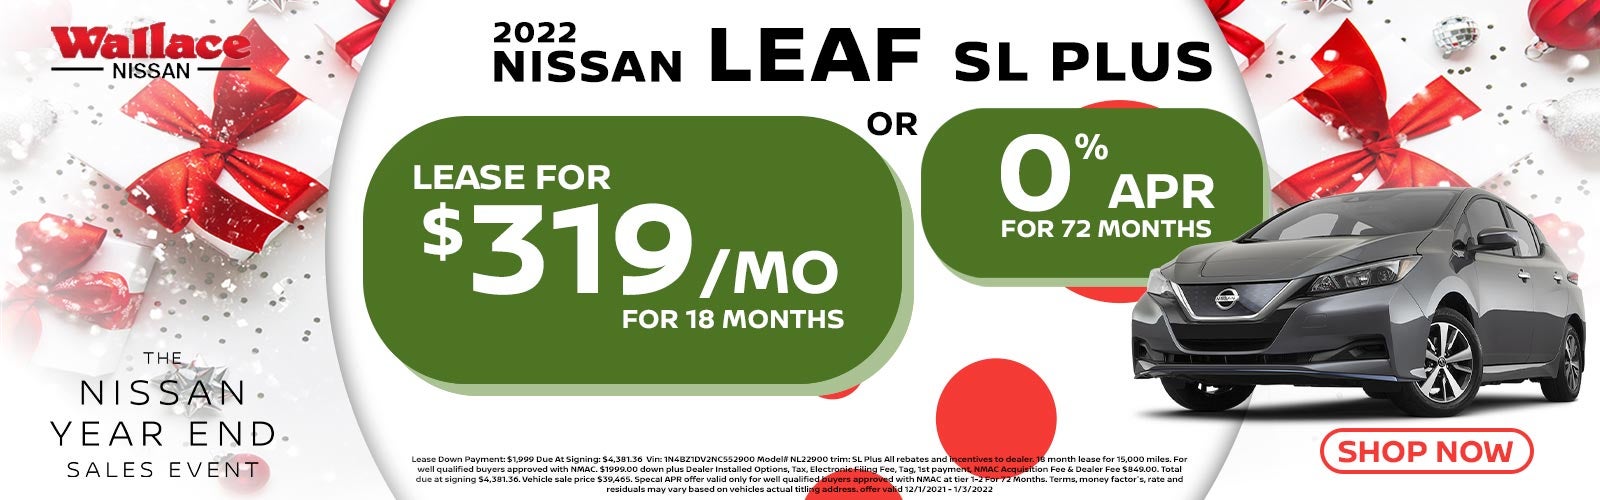 Nissan Leaf Special Offer